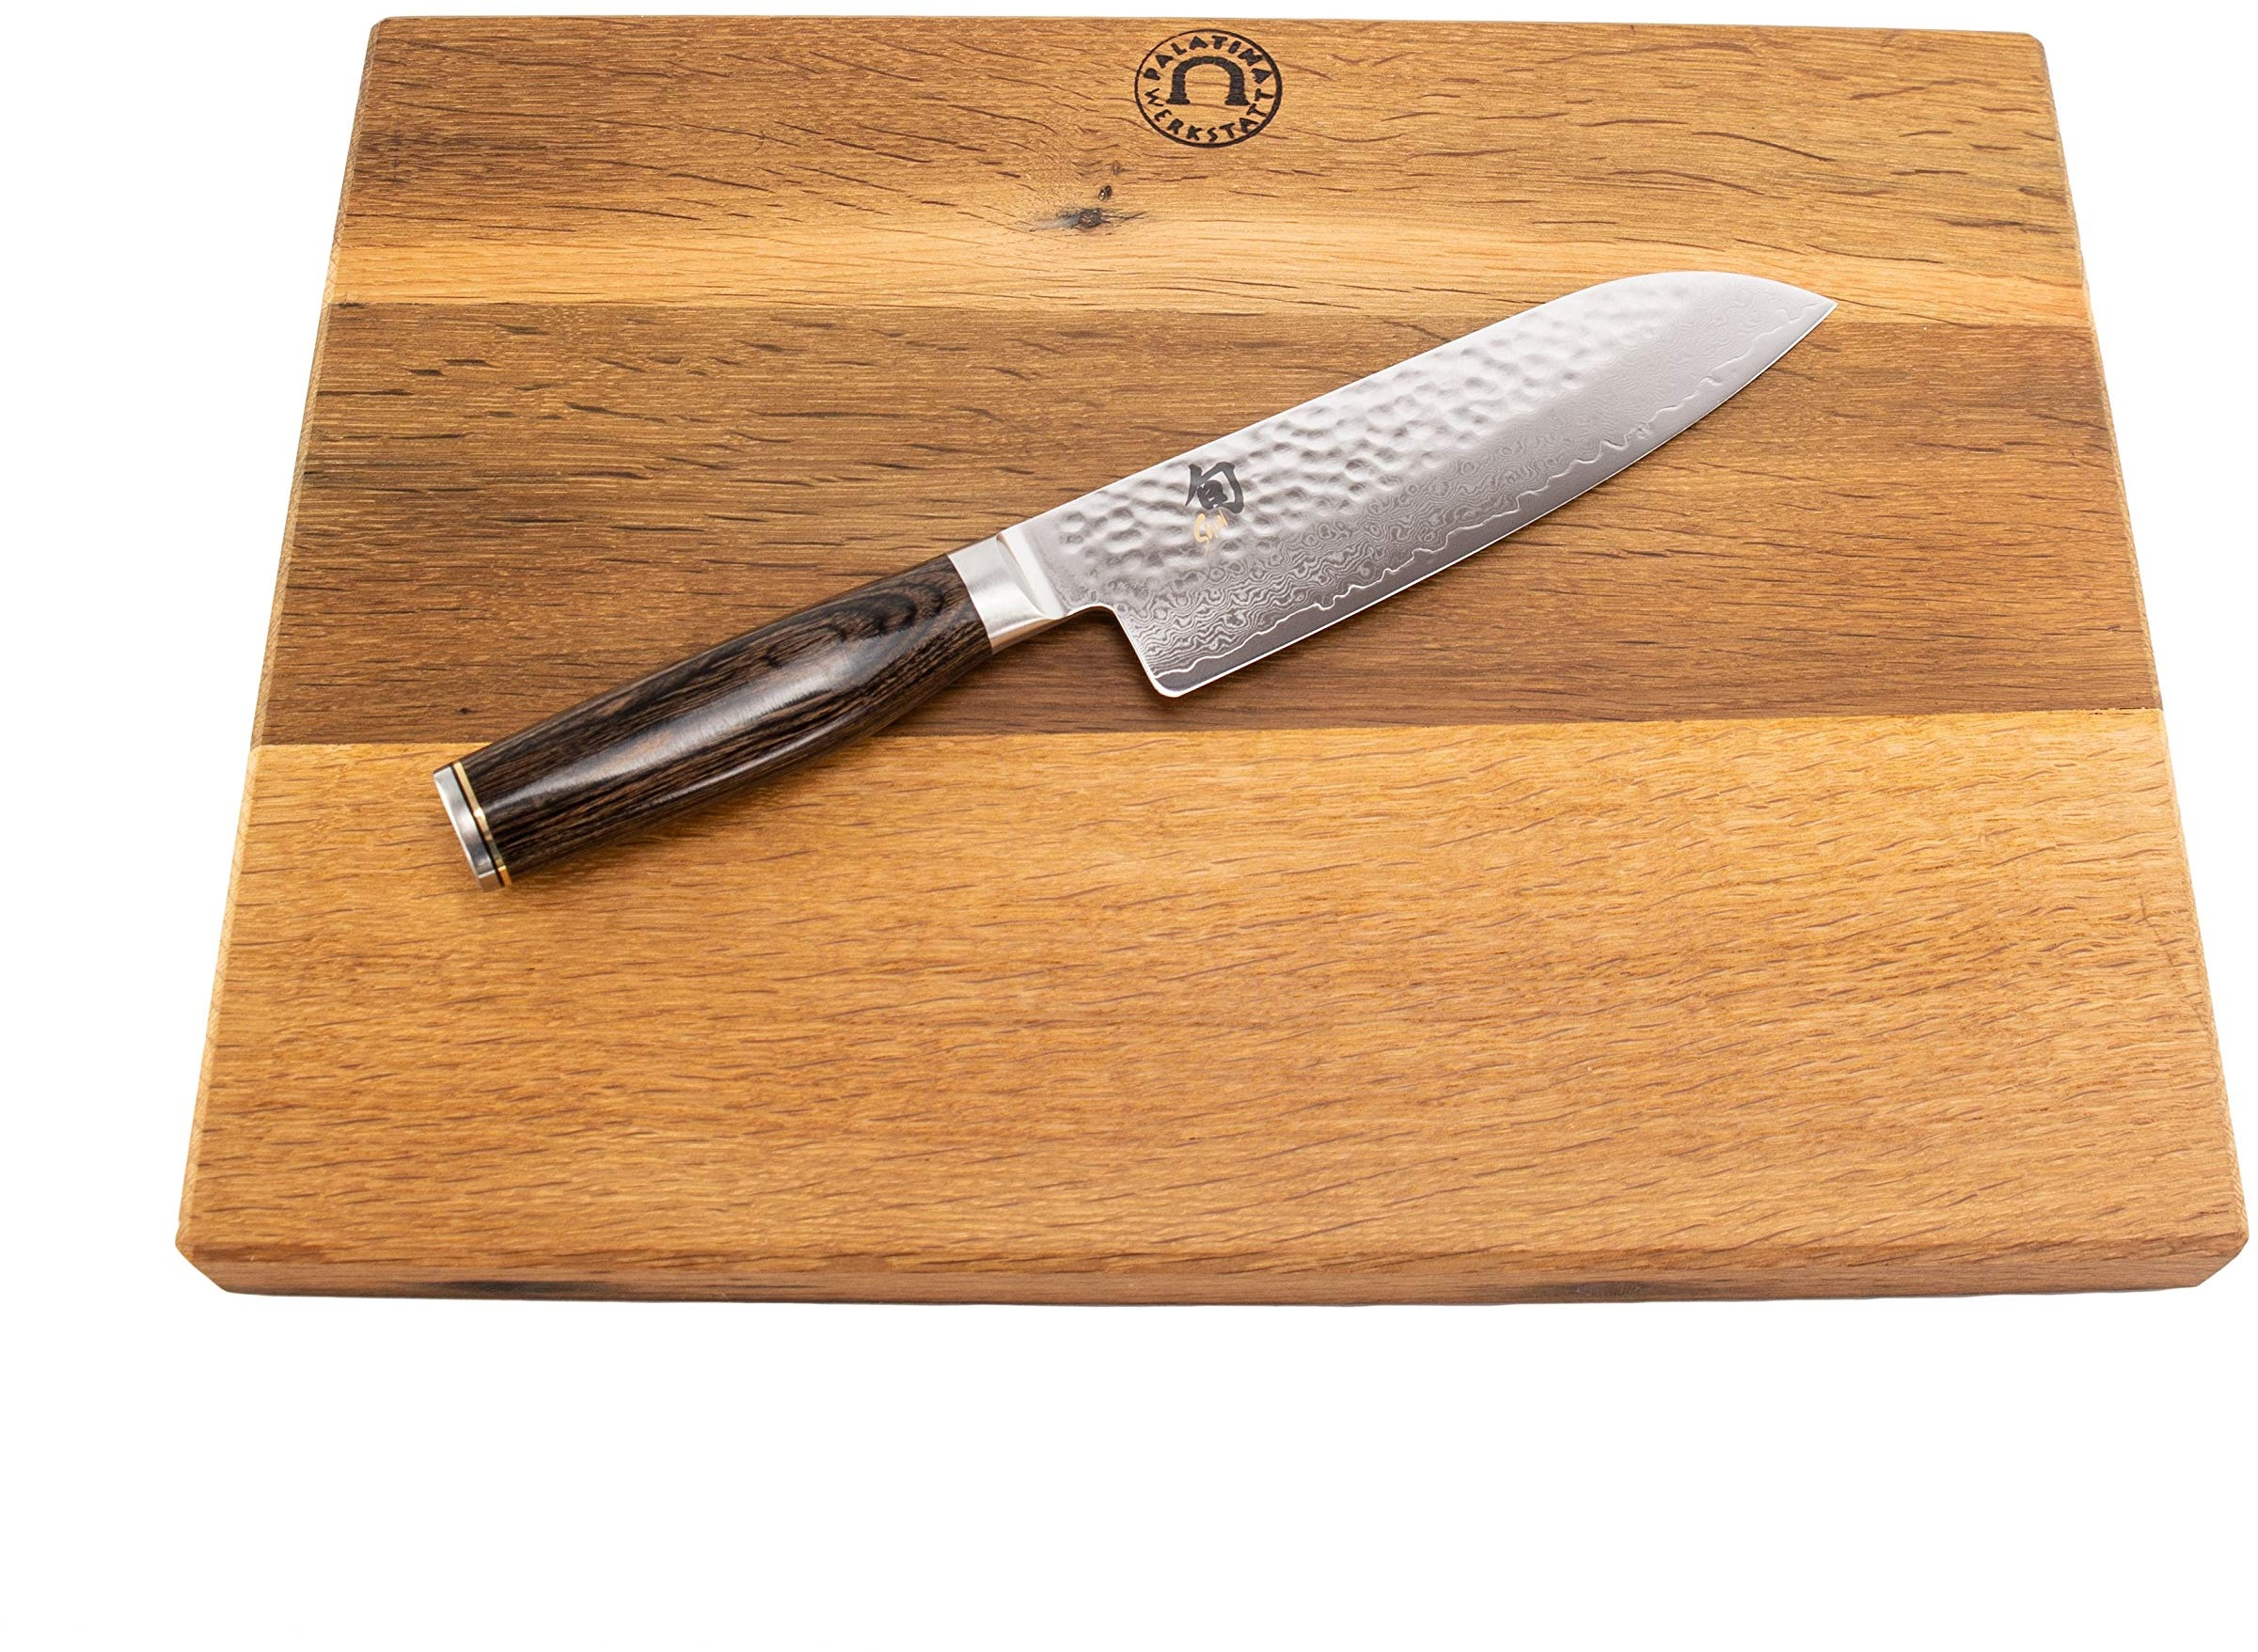 Kai Shun Messer Angebotsset – Tim Mälzer Messer Premier Serie - Santoku TDM 1702 – ultrascharfes japanisches Messer + 100% handgefertigtes Schneidebrett Unikat